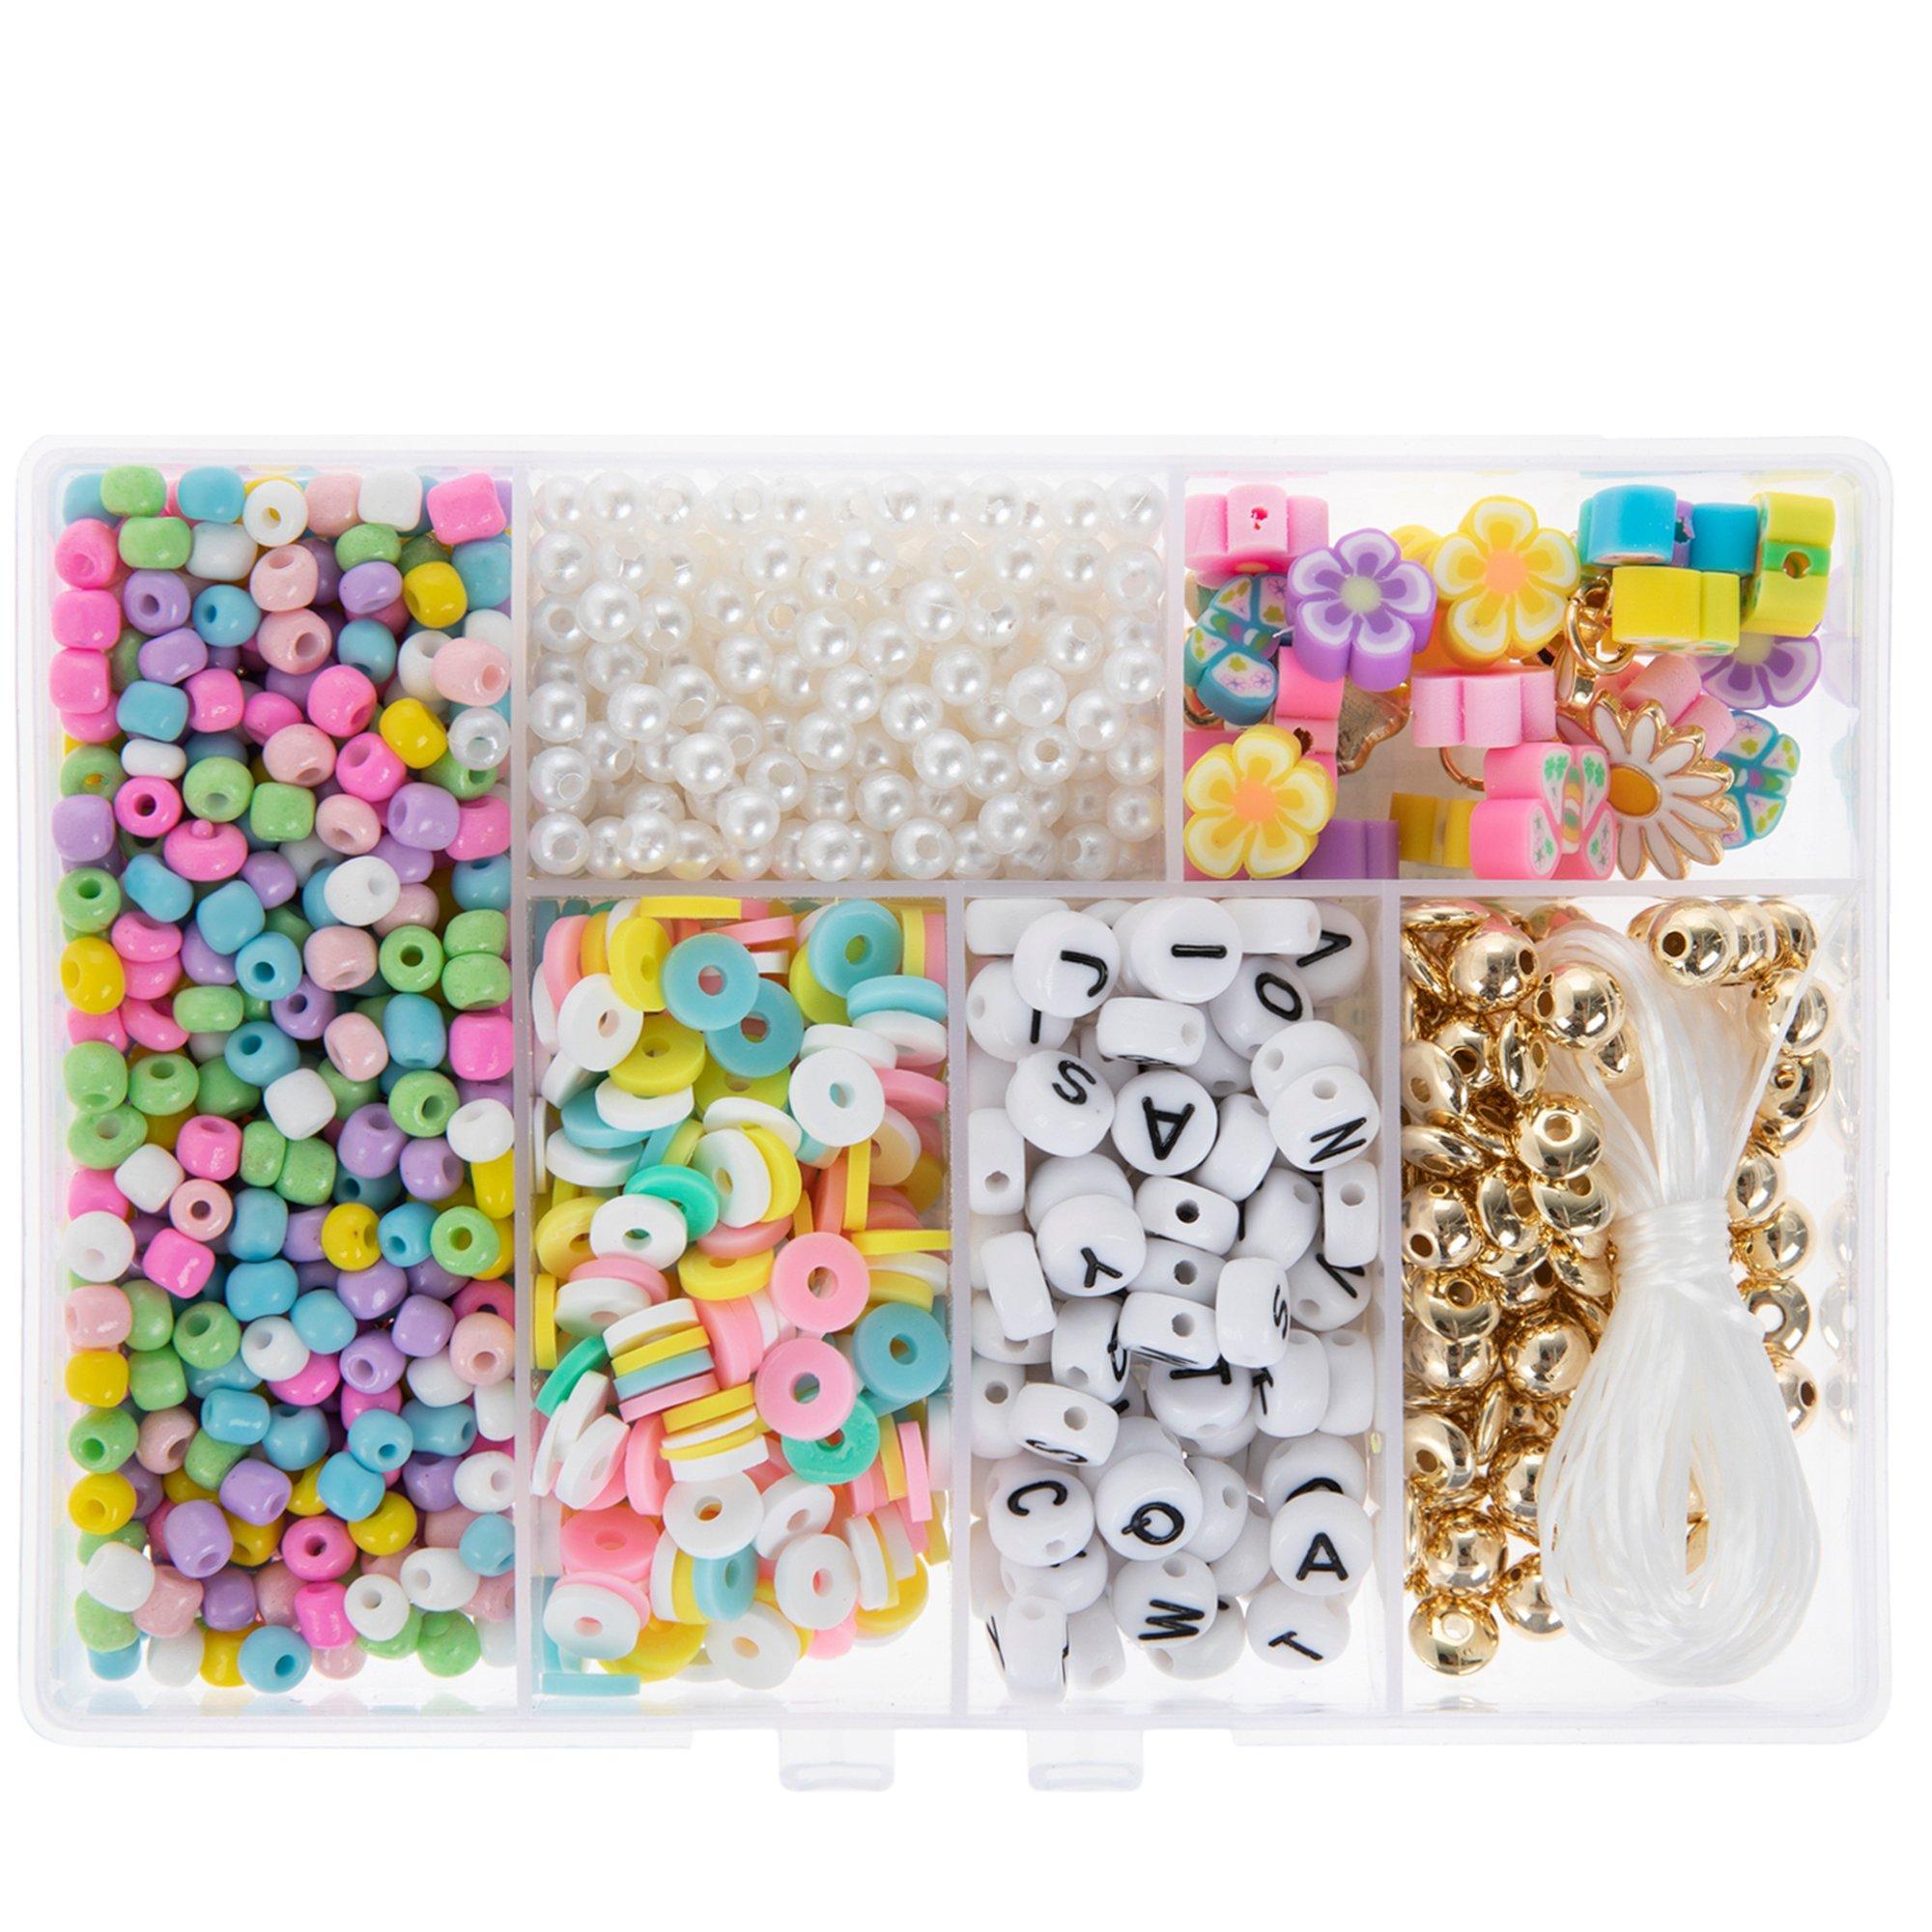 Tiny Treasures Perler Bead Kit, Hobby Lobby